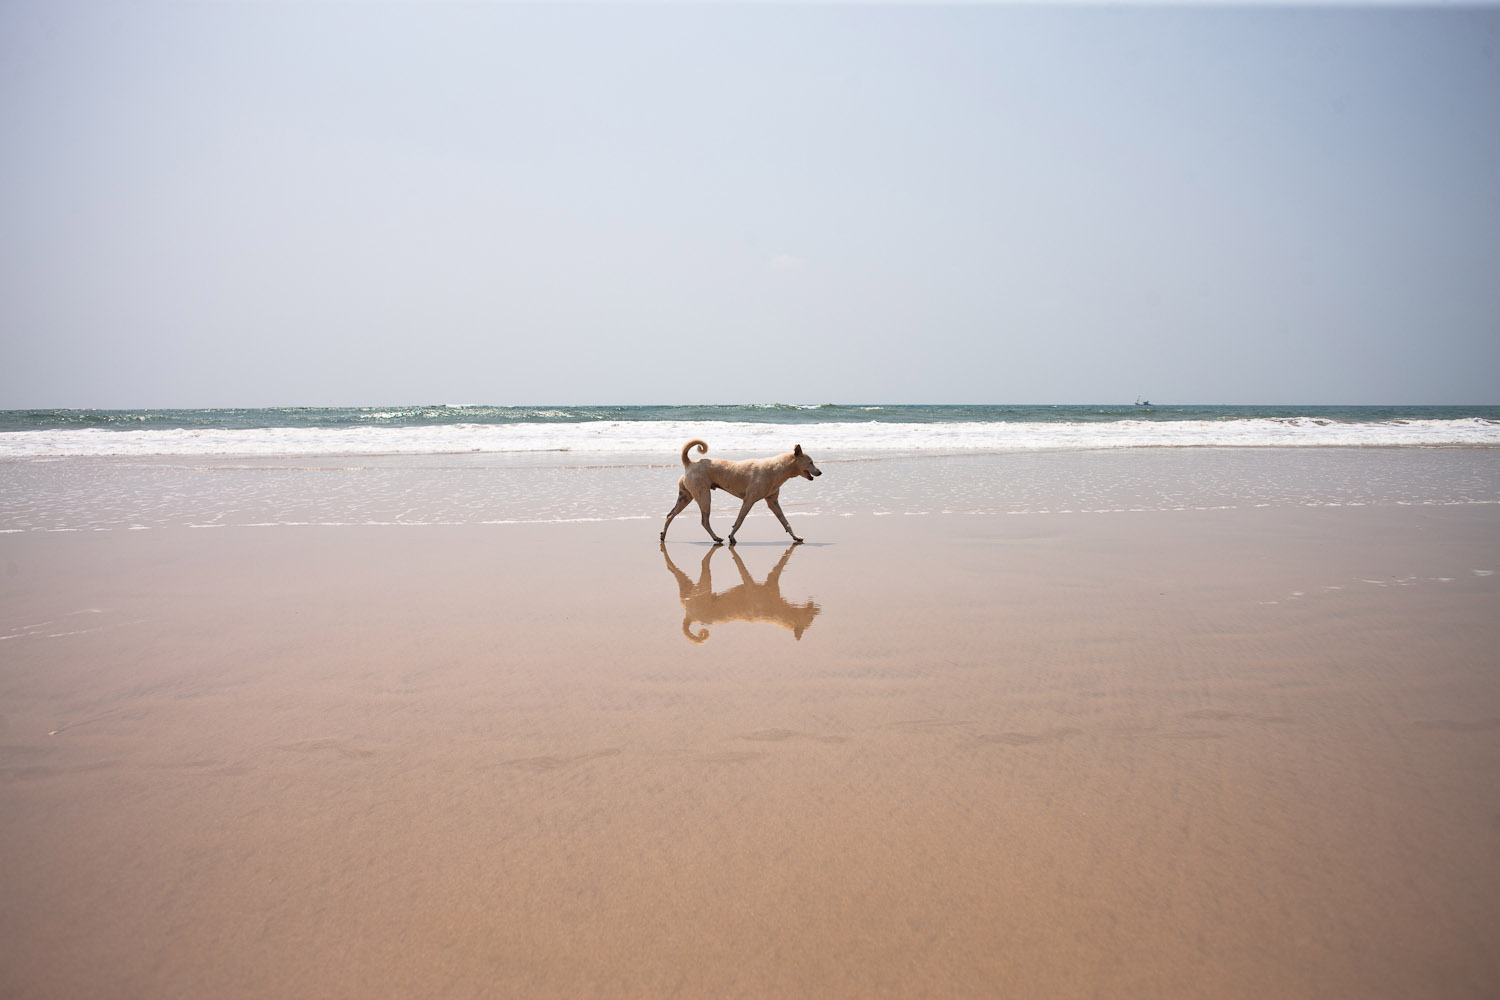 A dog on the beach in Goa